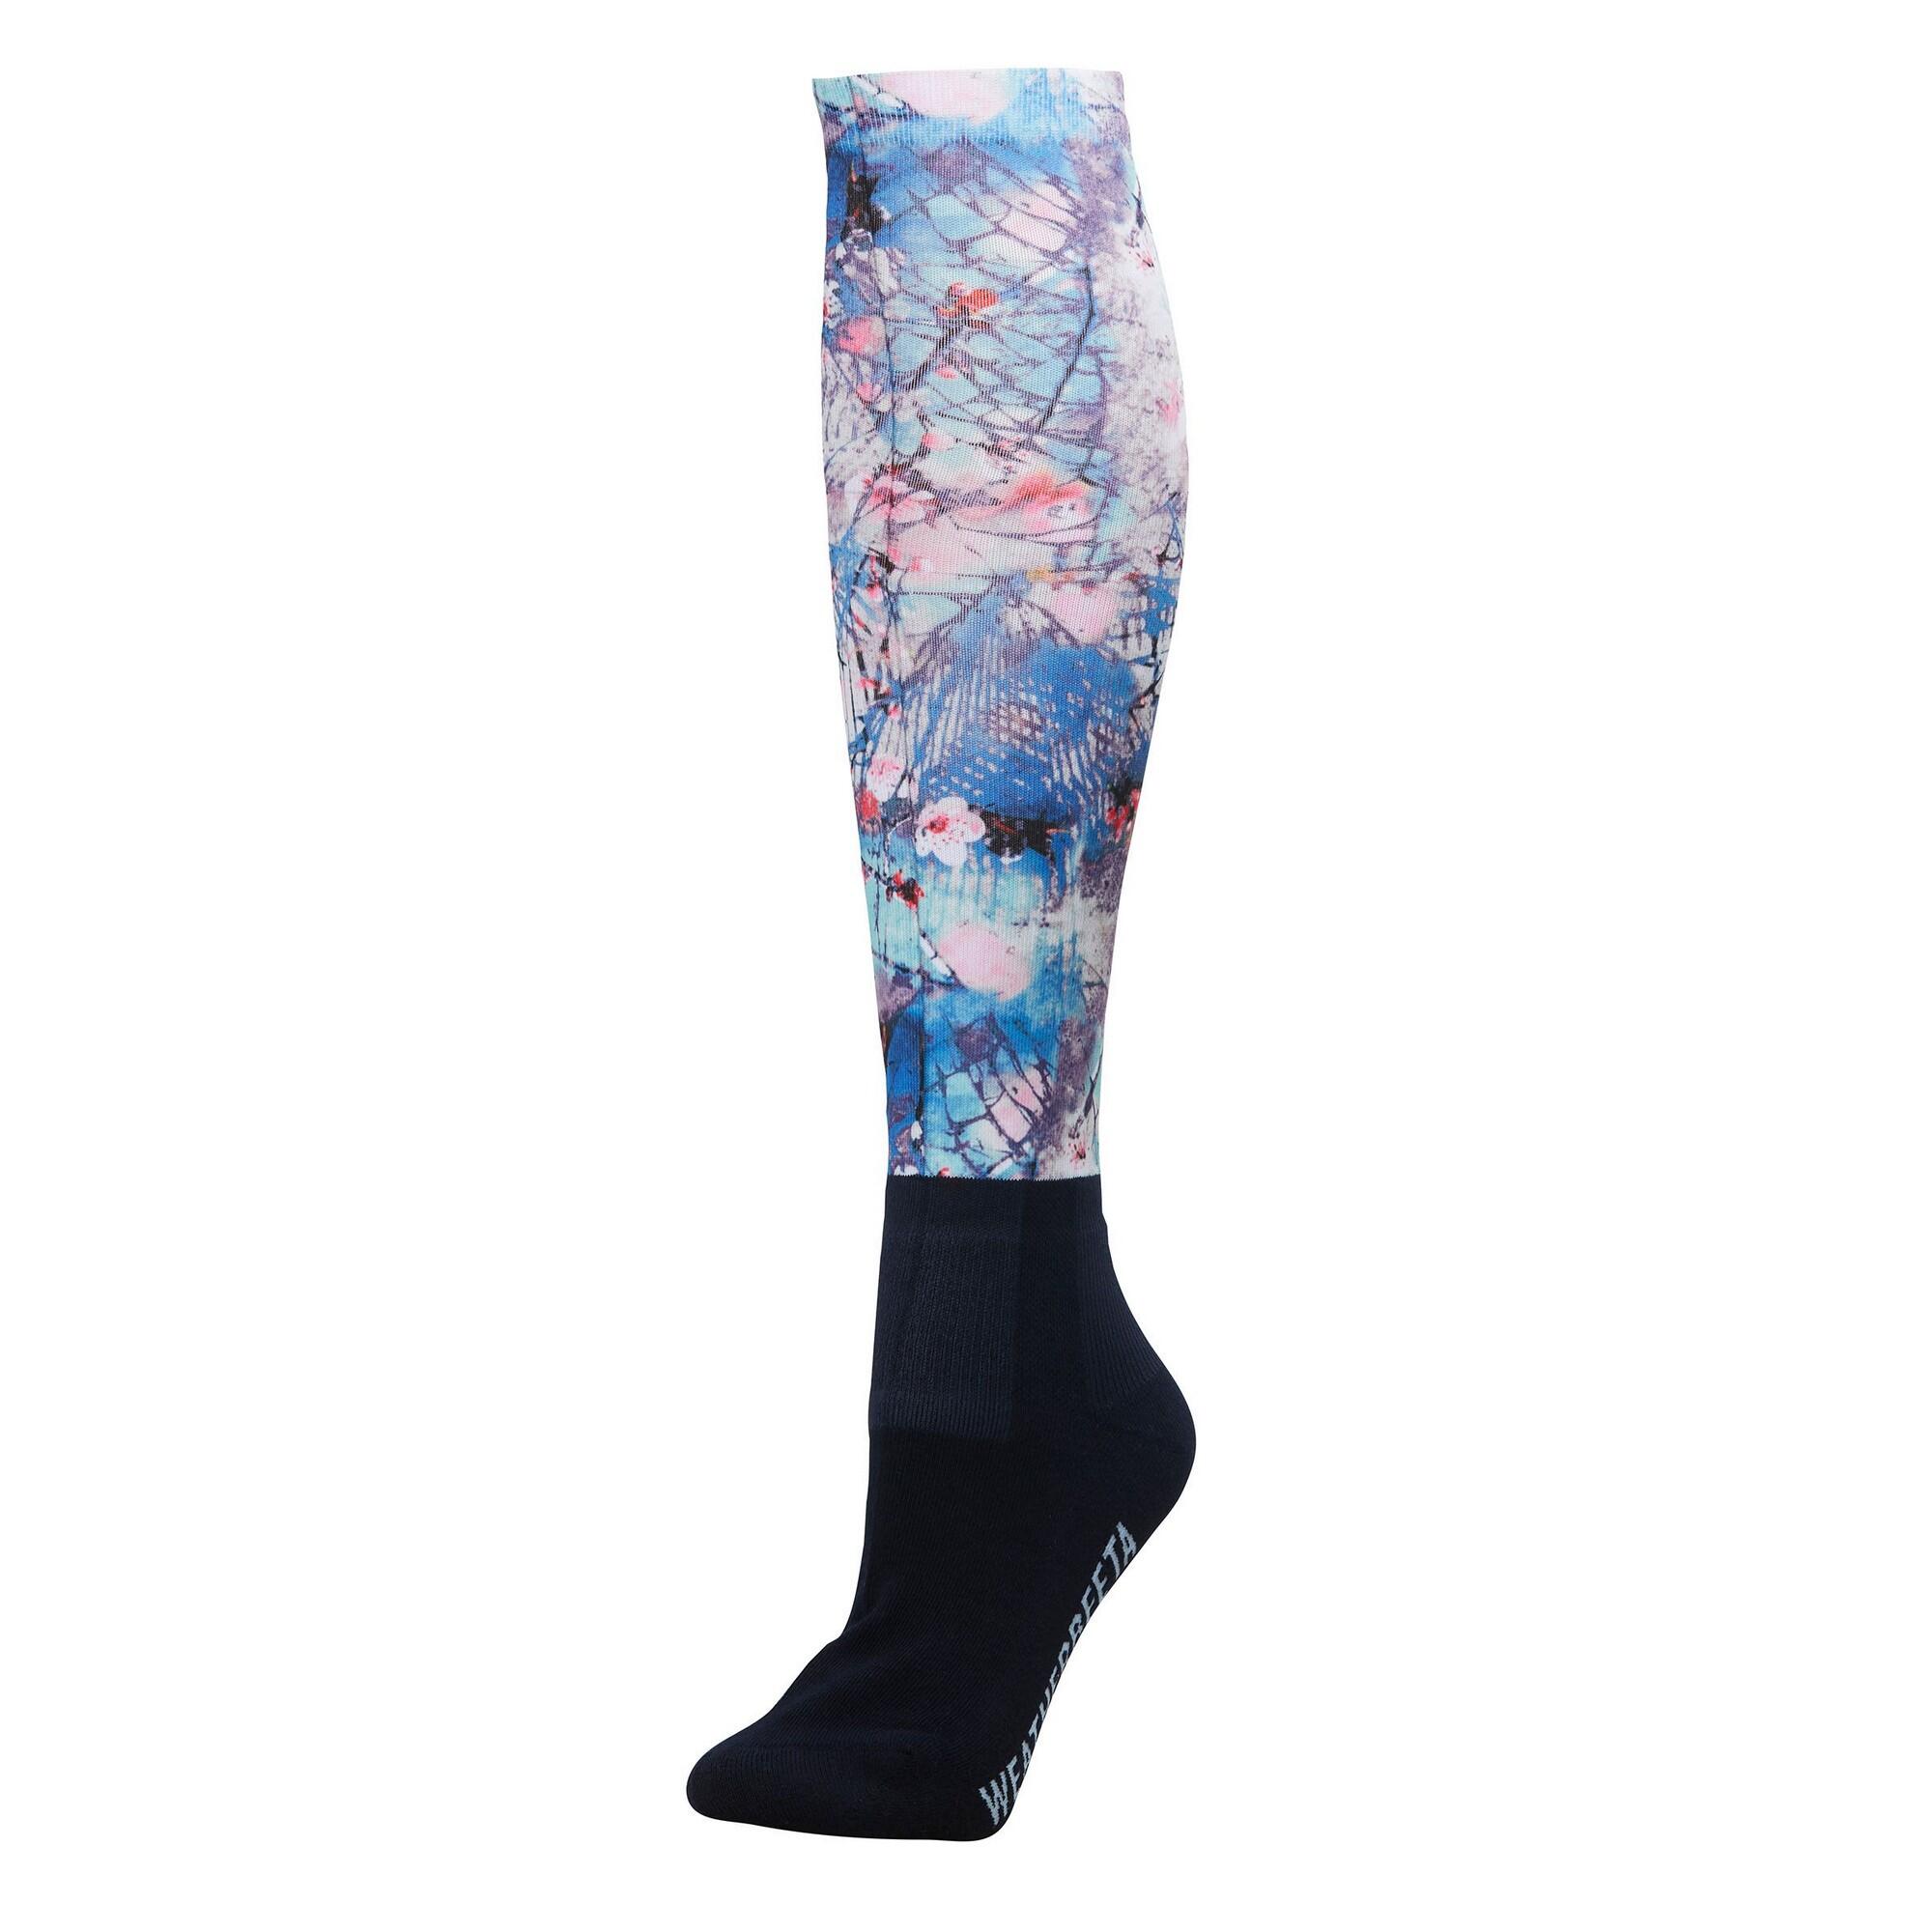 WEATHERBEETA Unisex Adult Blossom Knee High Socks (Multicoloured)